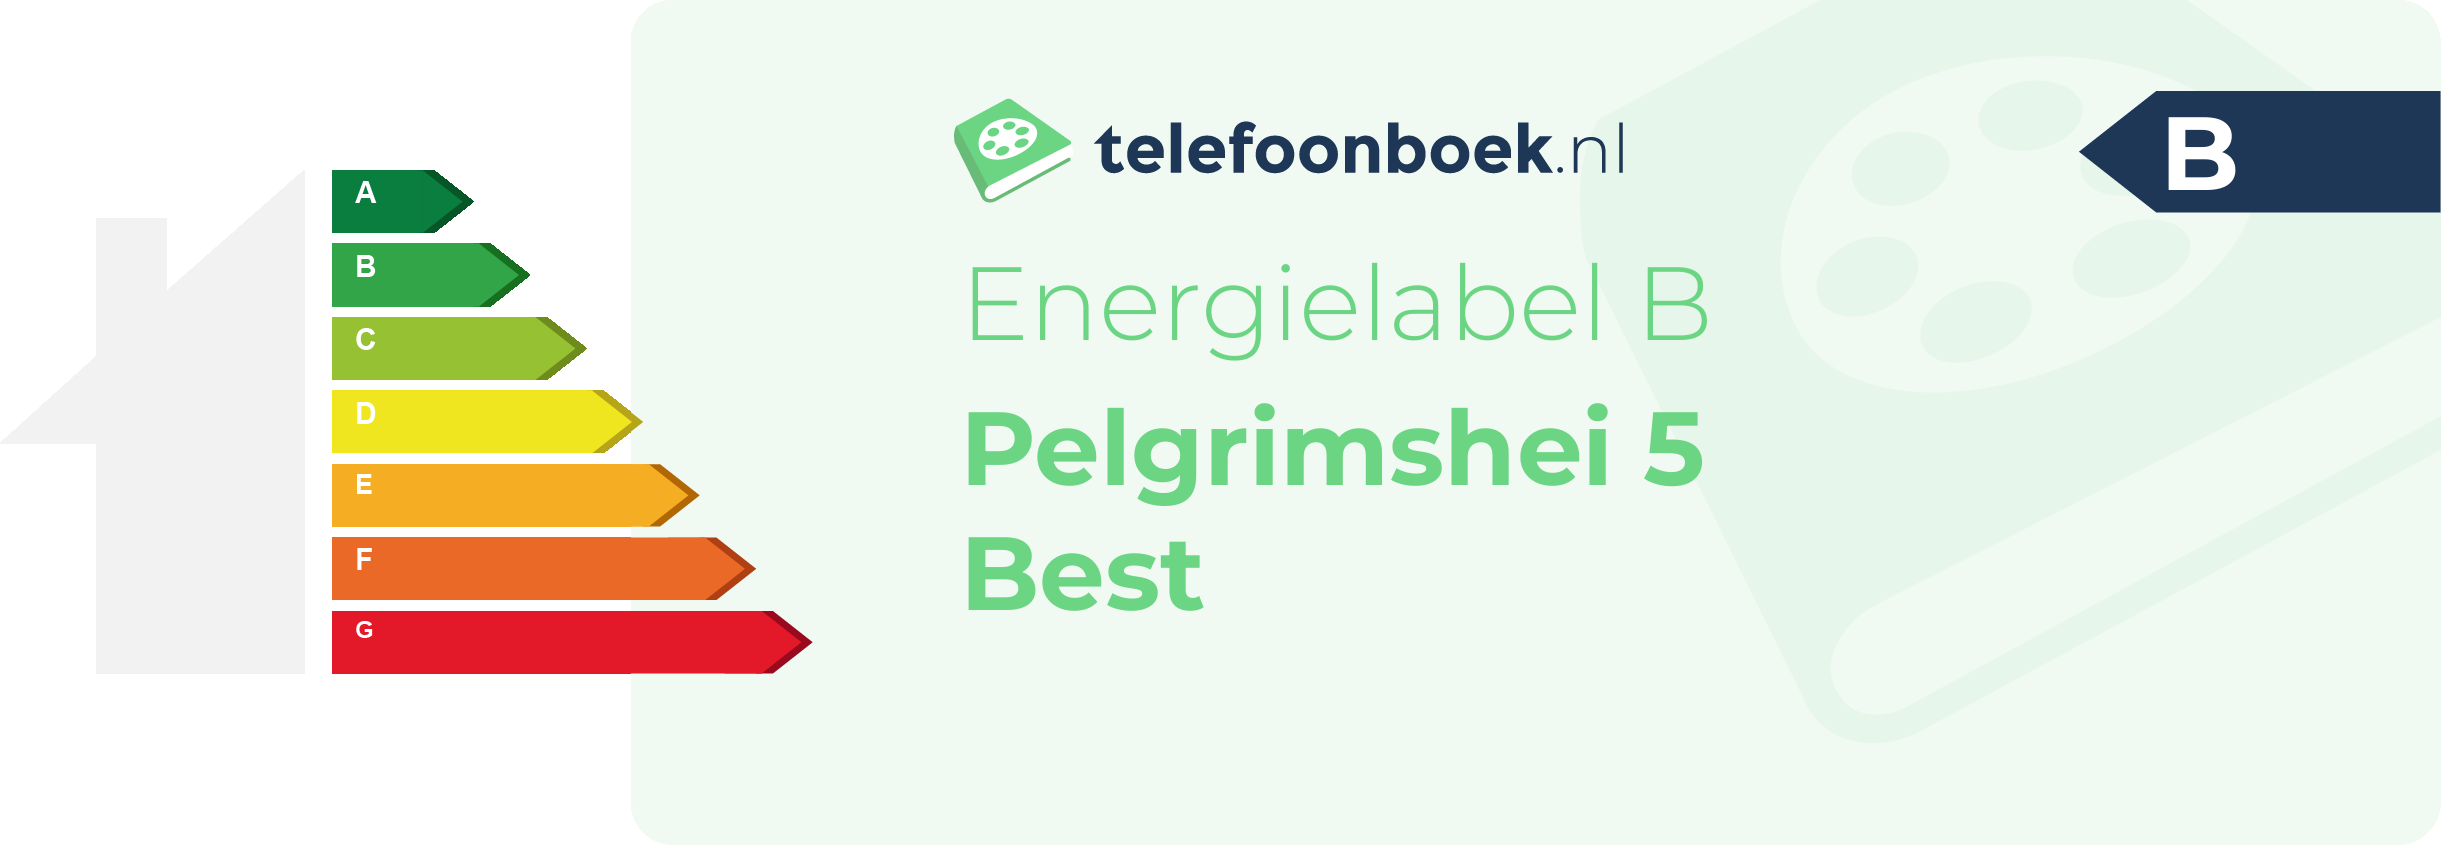 Energielabel Pelgrimshei 5 Best